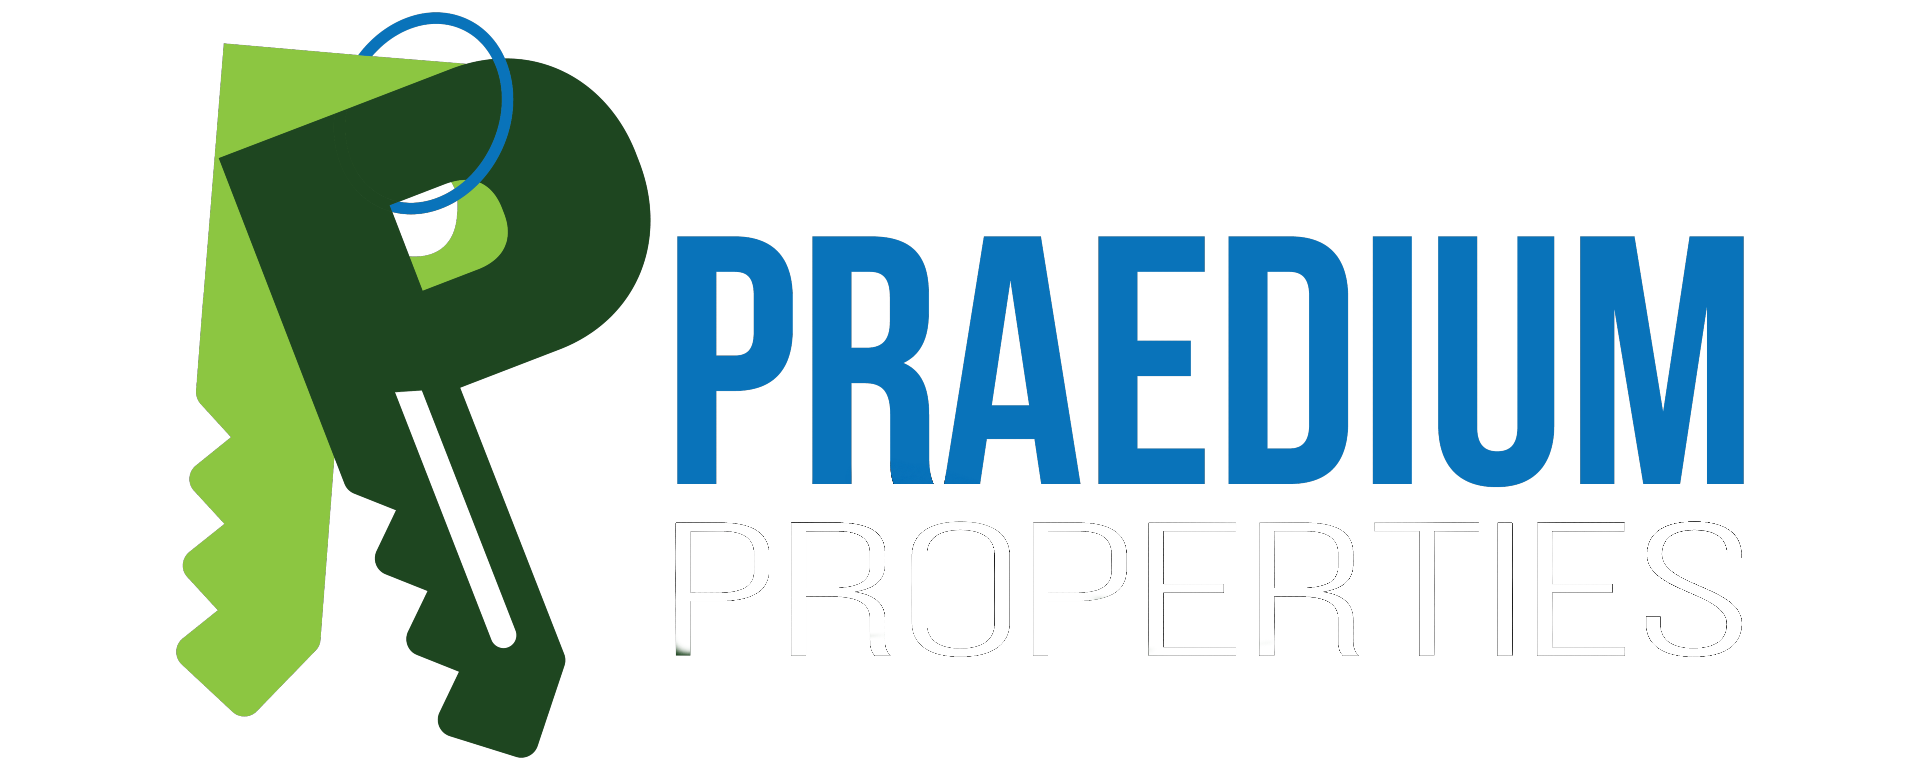 Praedium Properties